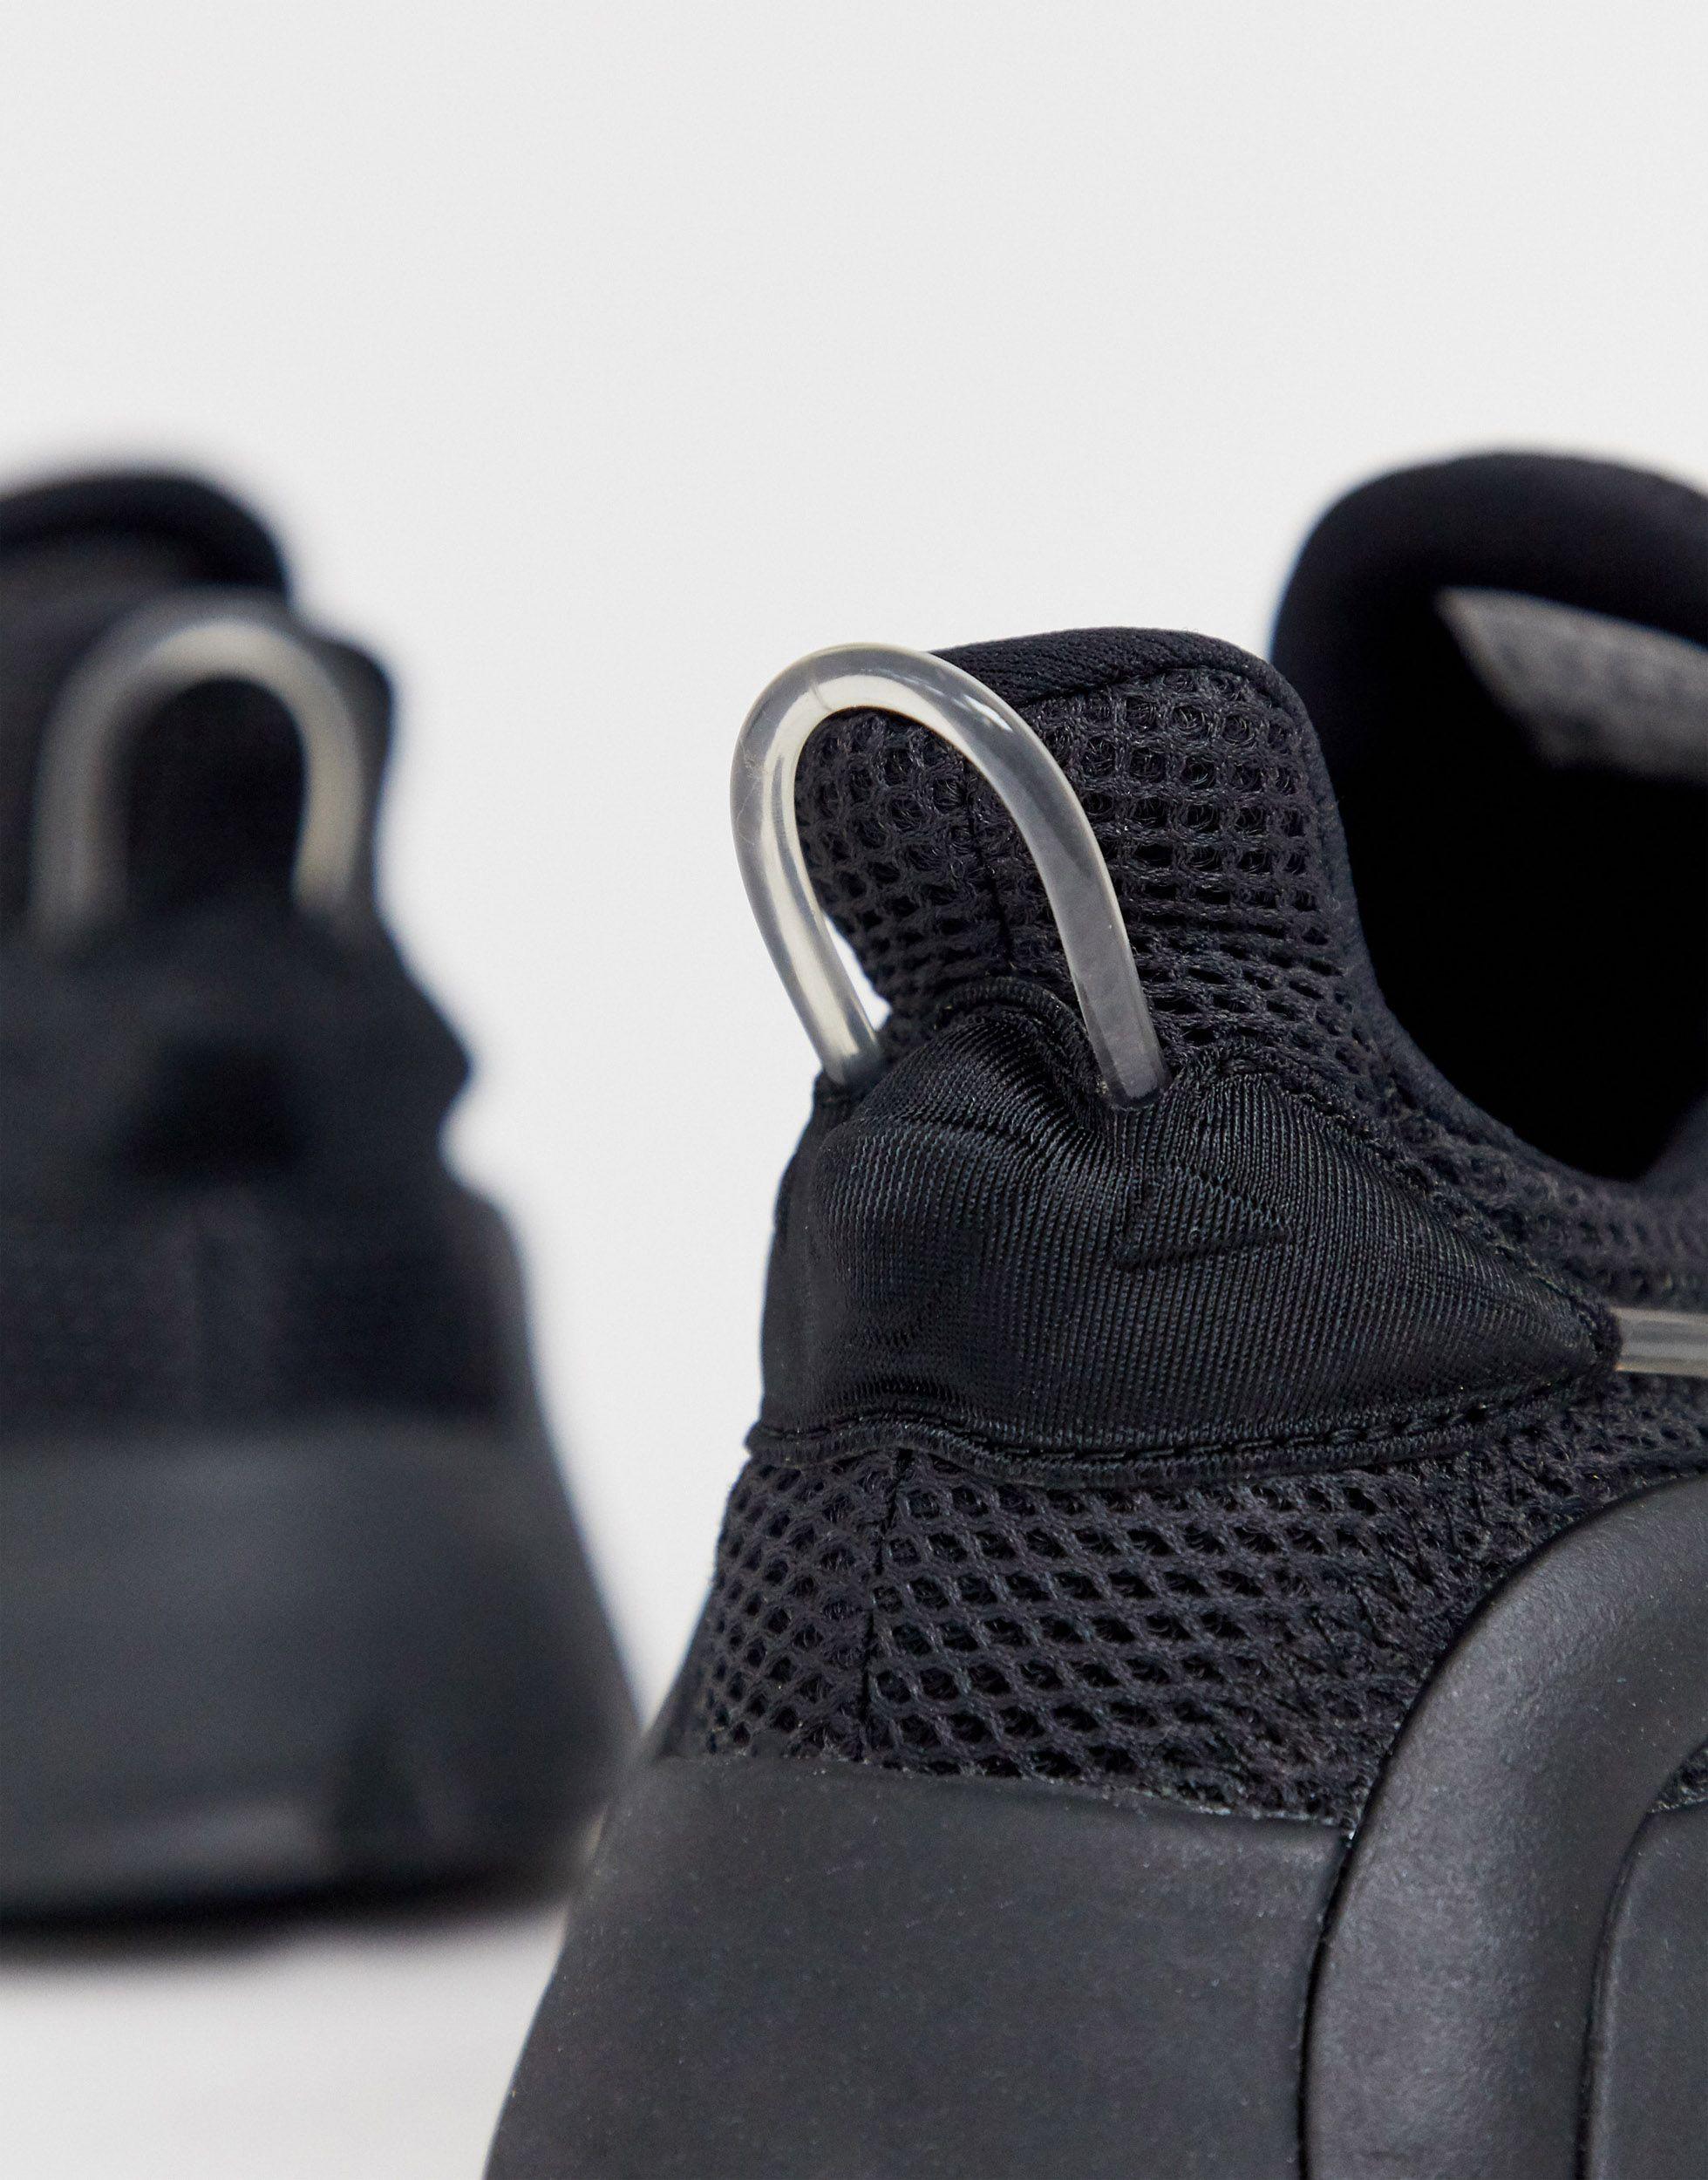 adidas originals lxcon adiprene trainers in triple black